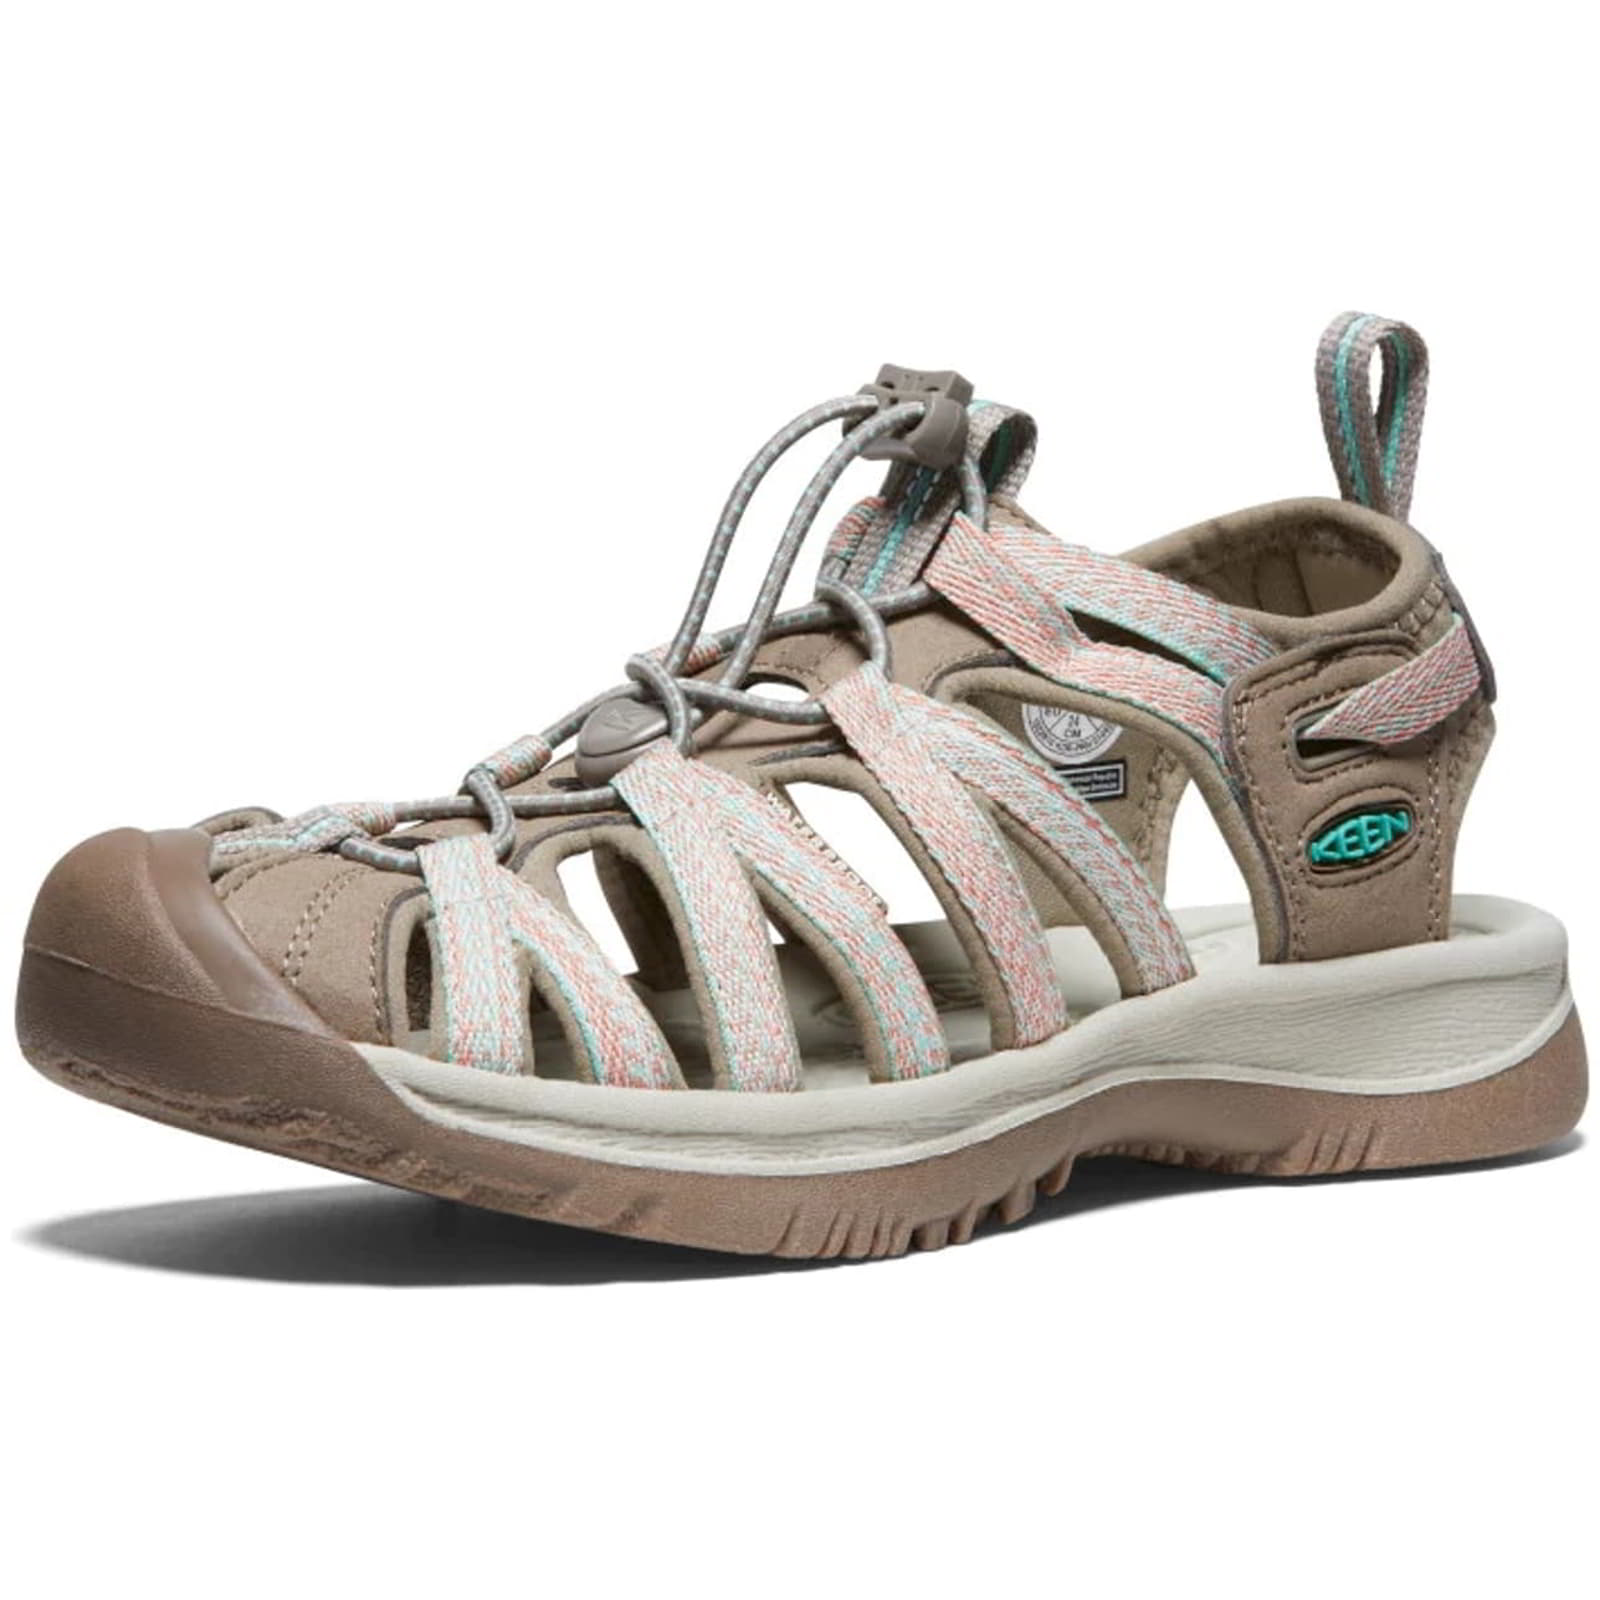 Keen Whisper Women's Waterproof Walking Hiking Sandals - UK 7 / 40 / US 9.5